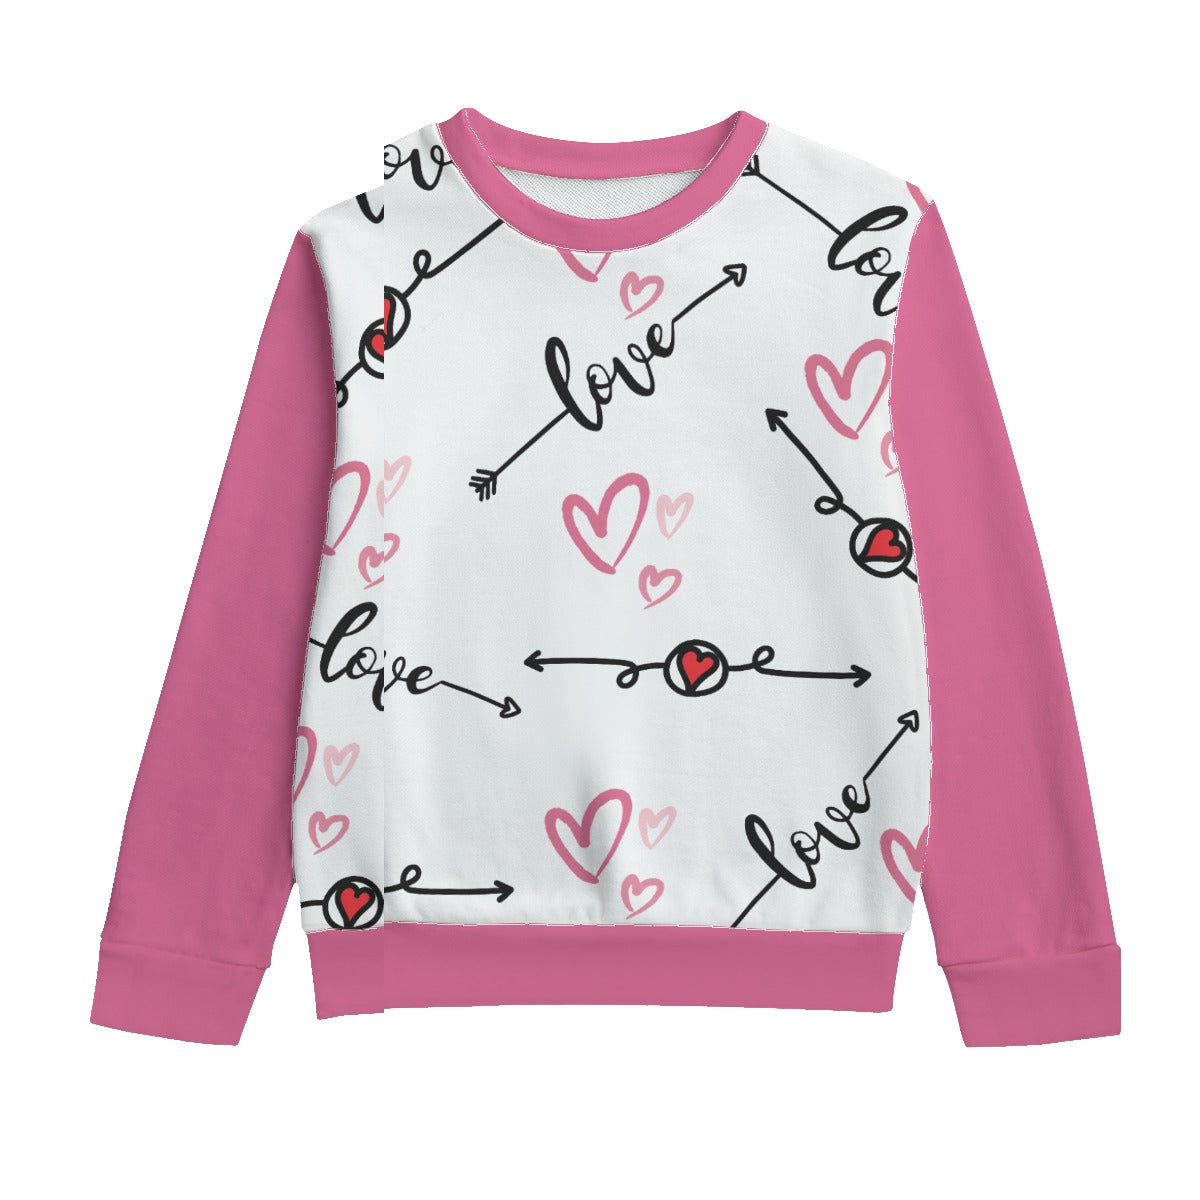 - Love in Motion Kid's Round Neck Sweatshirt | 100% Cotton - Kids sweatshirt at TFC&H Co.